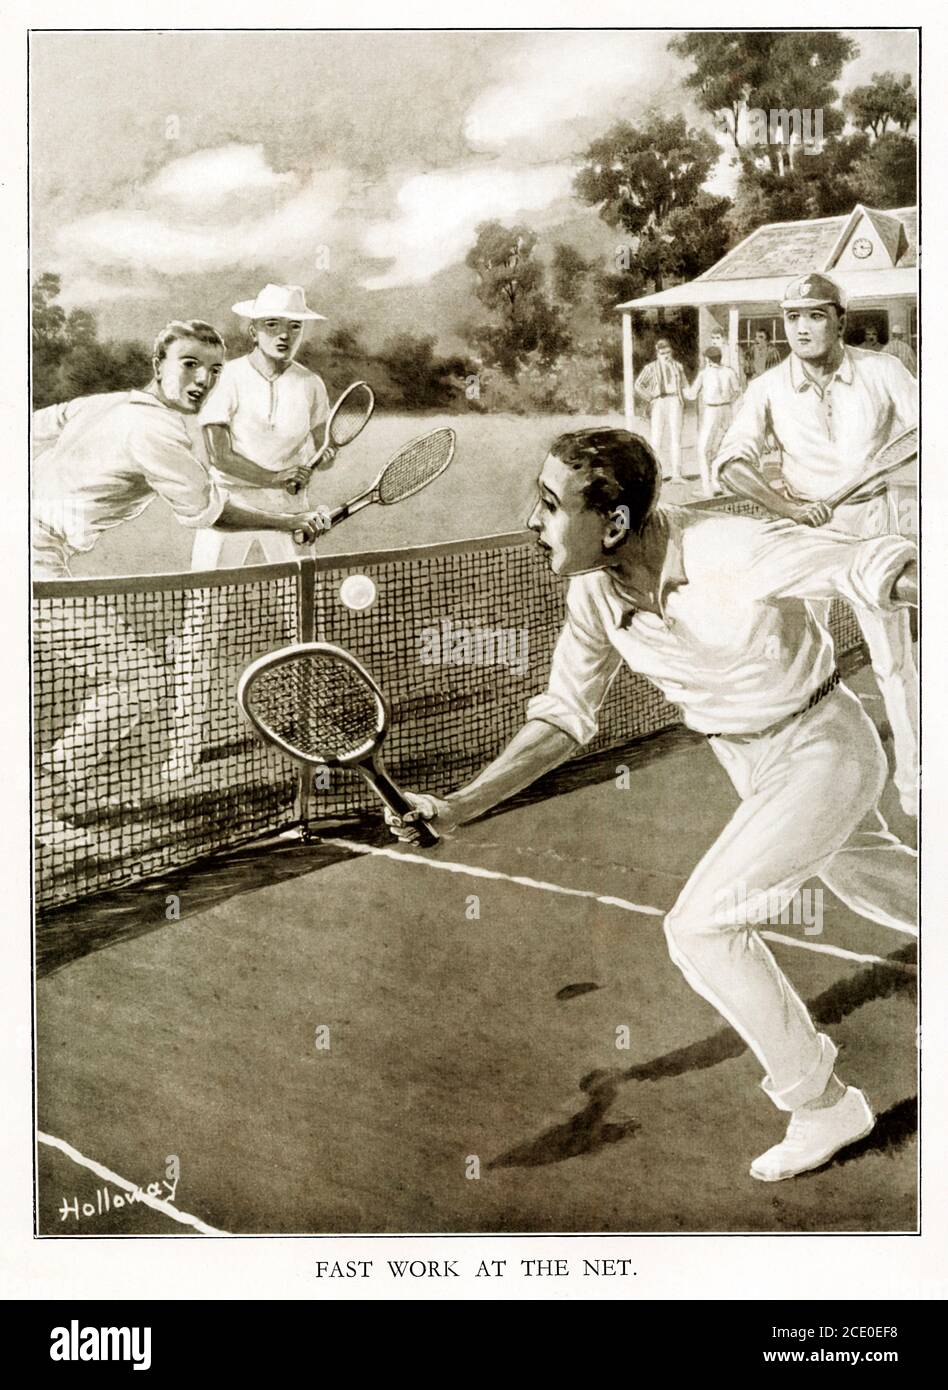 Schnelle Arbeit im Netz, 1920er-Illustration der Tennis-Match-Action mit einem intelligent getagten Volley aus nächster Nähe in einem engen Doppel-Match Stockfoto